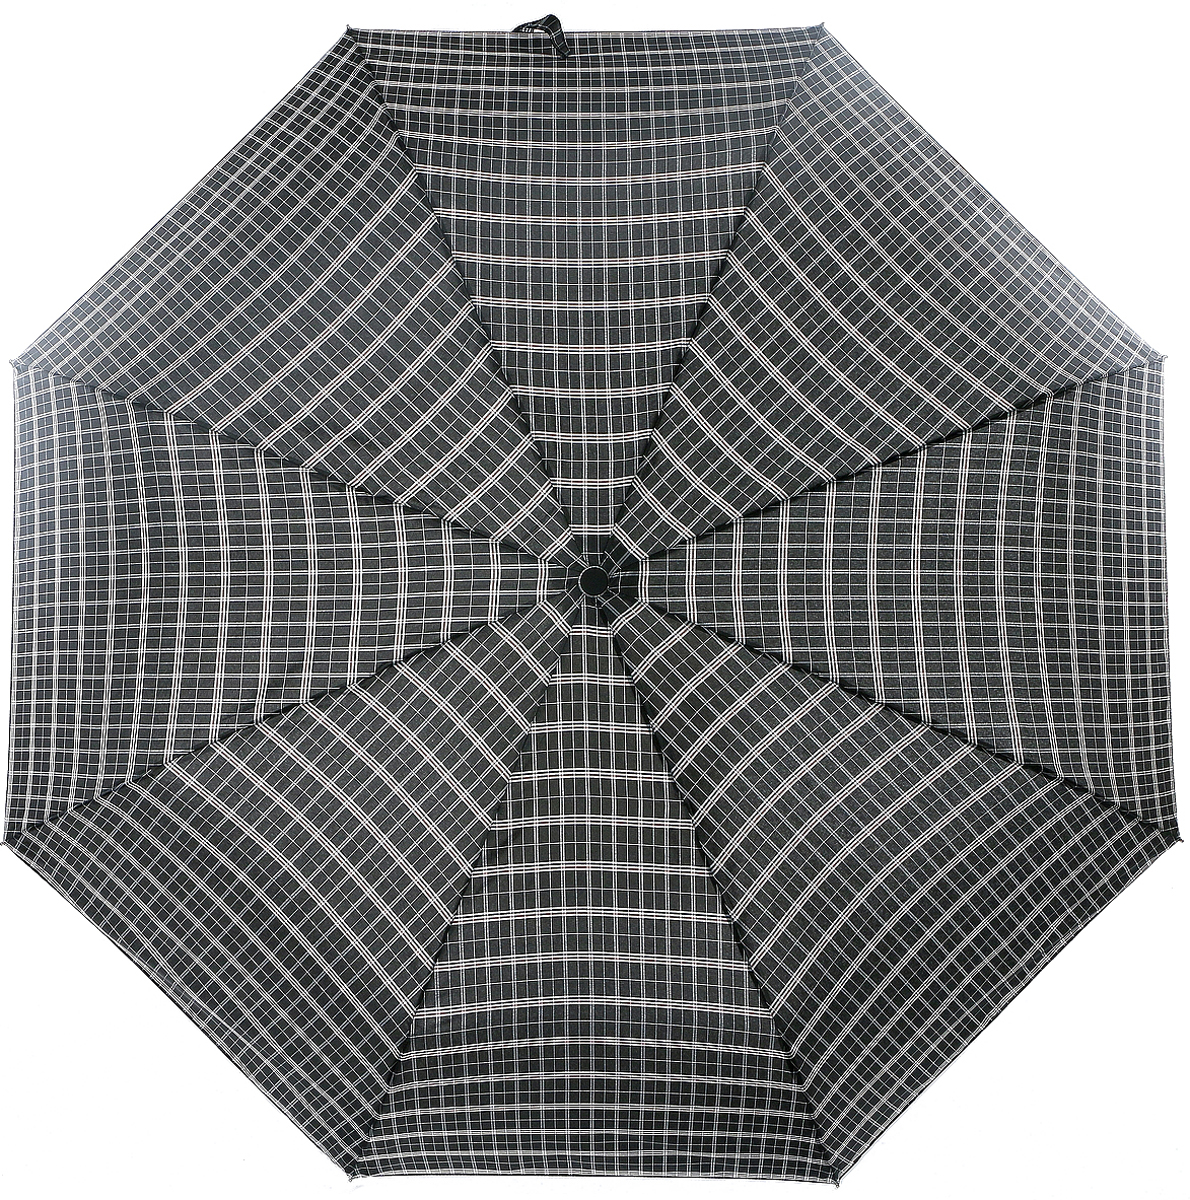 Зонт мужской Magic Rain, автомат, 3 сложения, цвет: черный, белый, темно-коричневый. 7027-1701